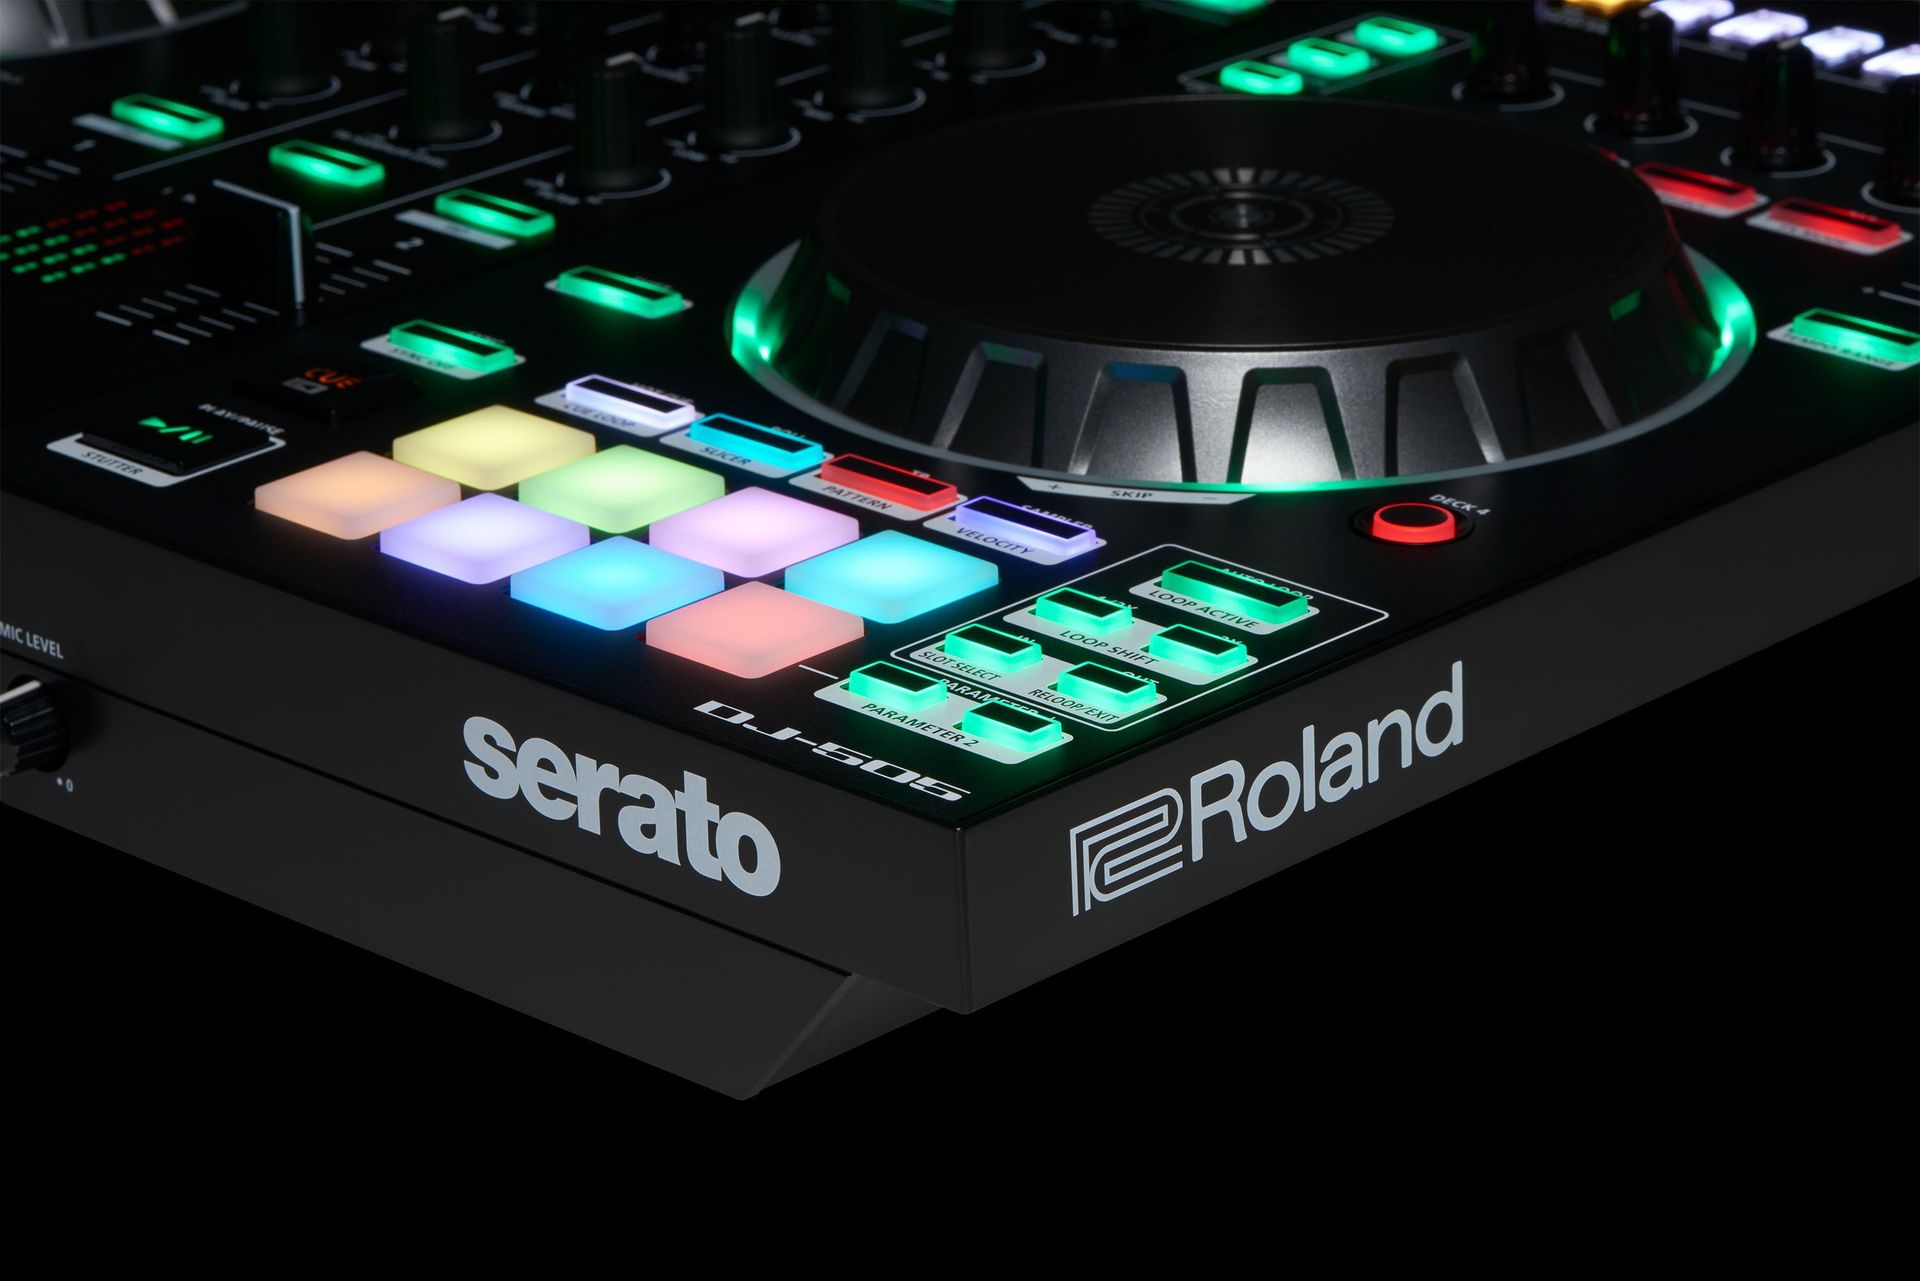 Roland DJ-505  2-Kanal DJ Controller für Serato DJ mit vier Decks